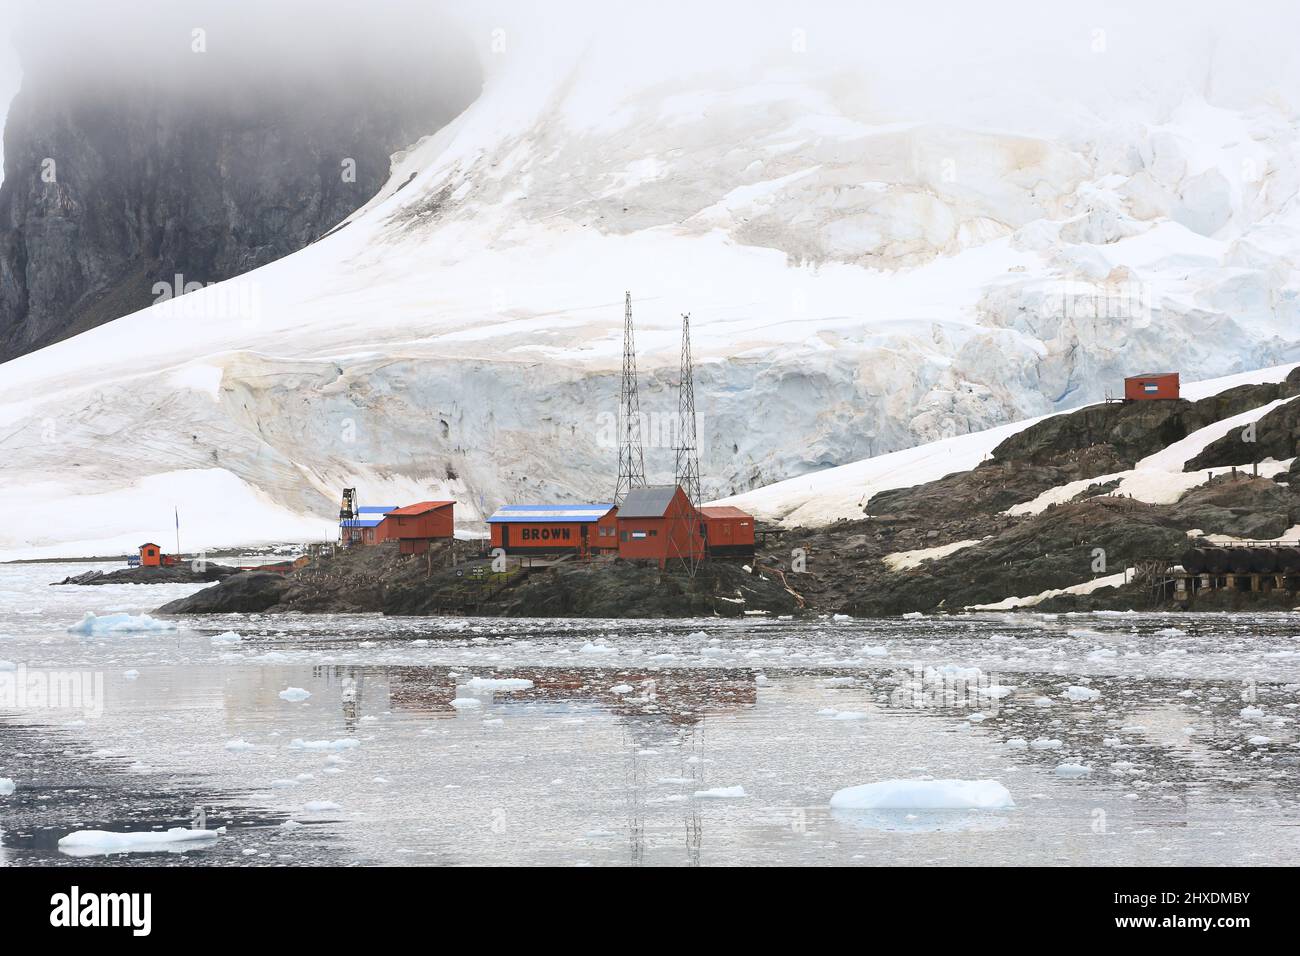 Die Almirante Brown Antarctic Base wurde 1951 von Argentinien auf der Paradise Bay auf der Antarktischen Halbinsel gegründet und ist eine wissenschaftliche Forschungsbasis. Stockfoto